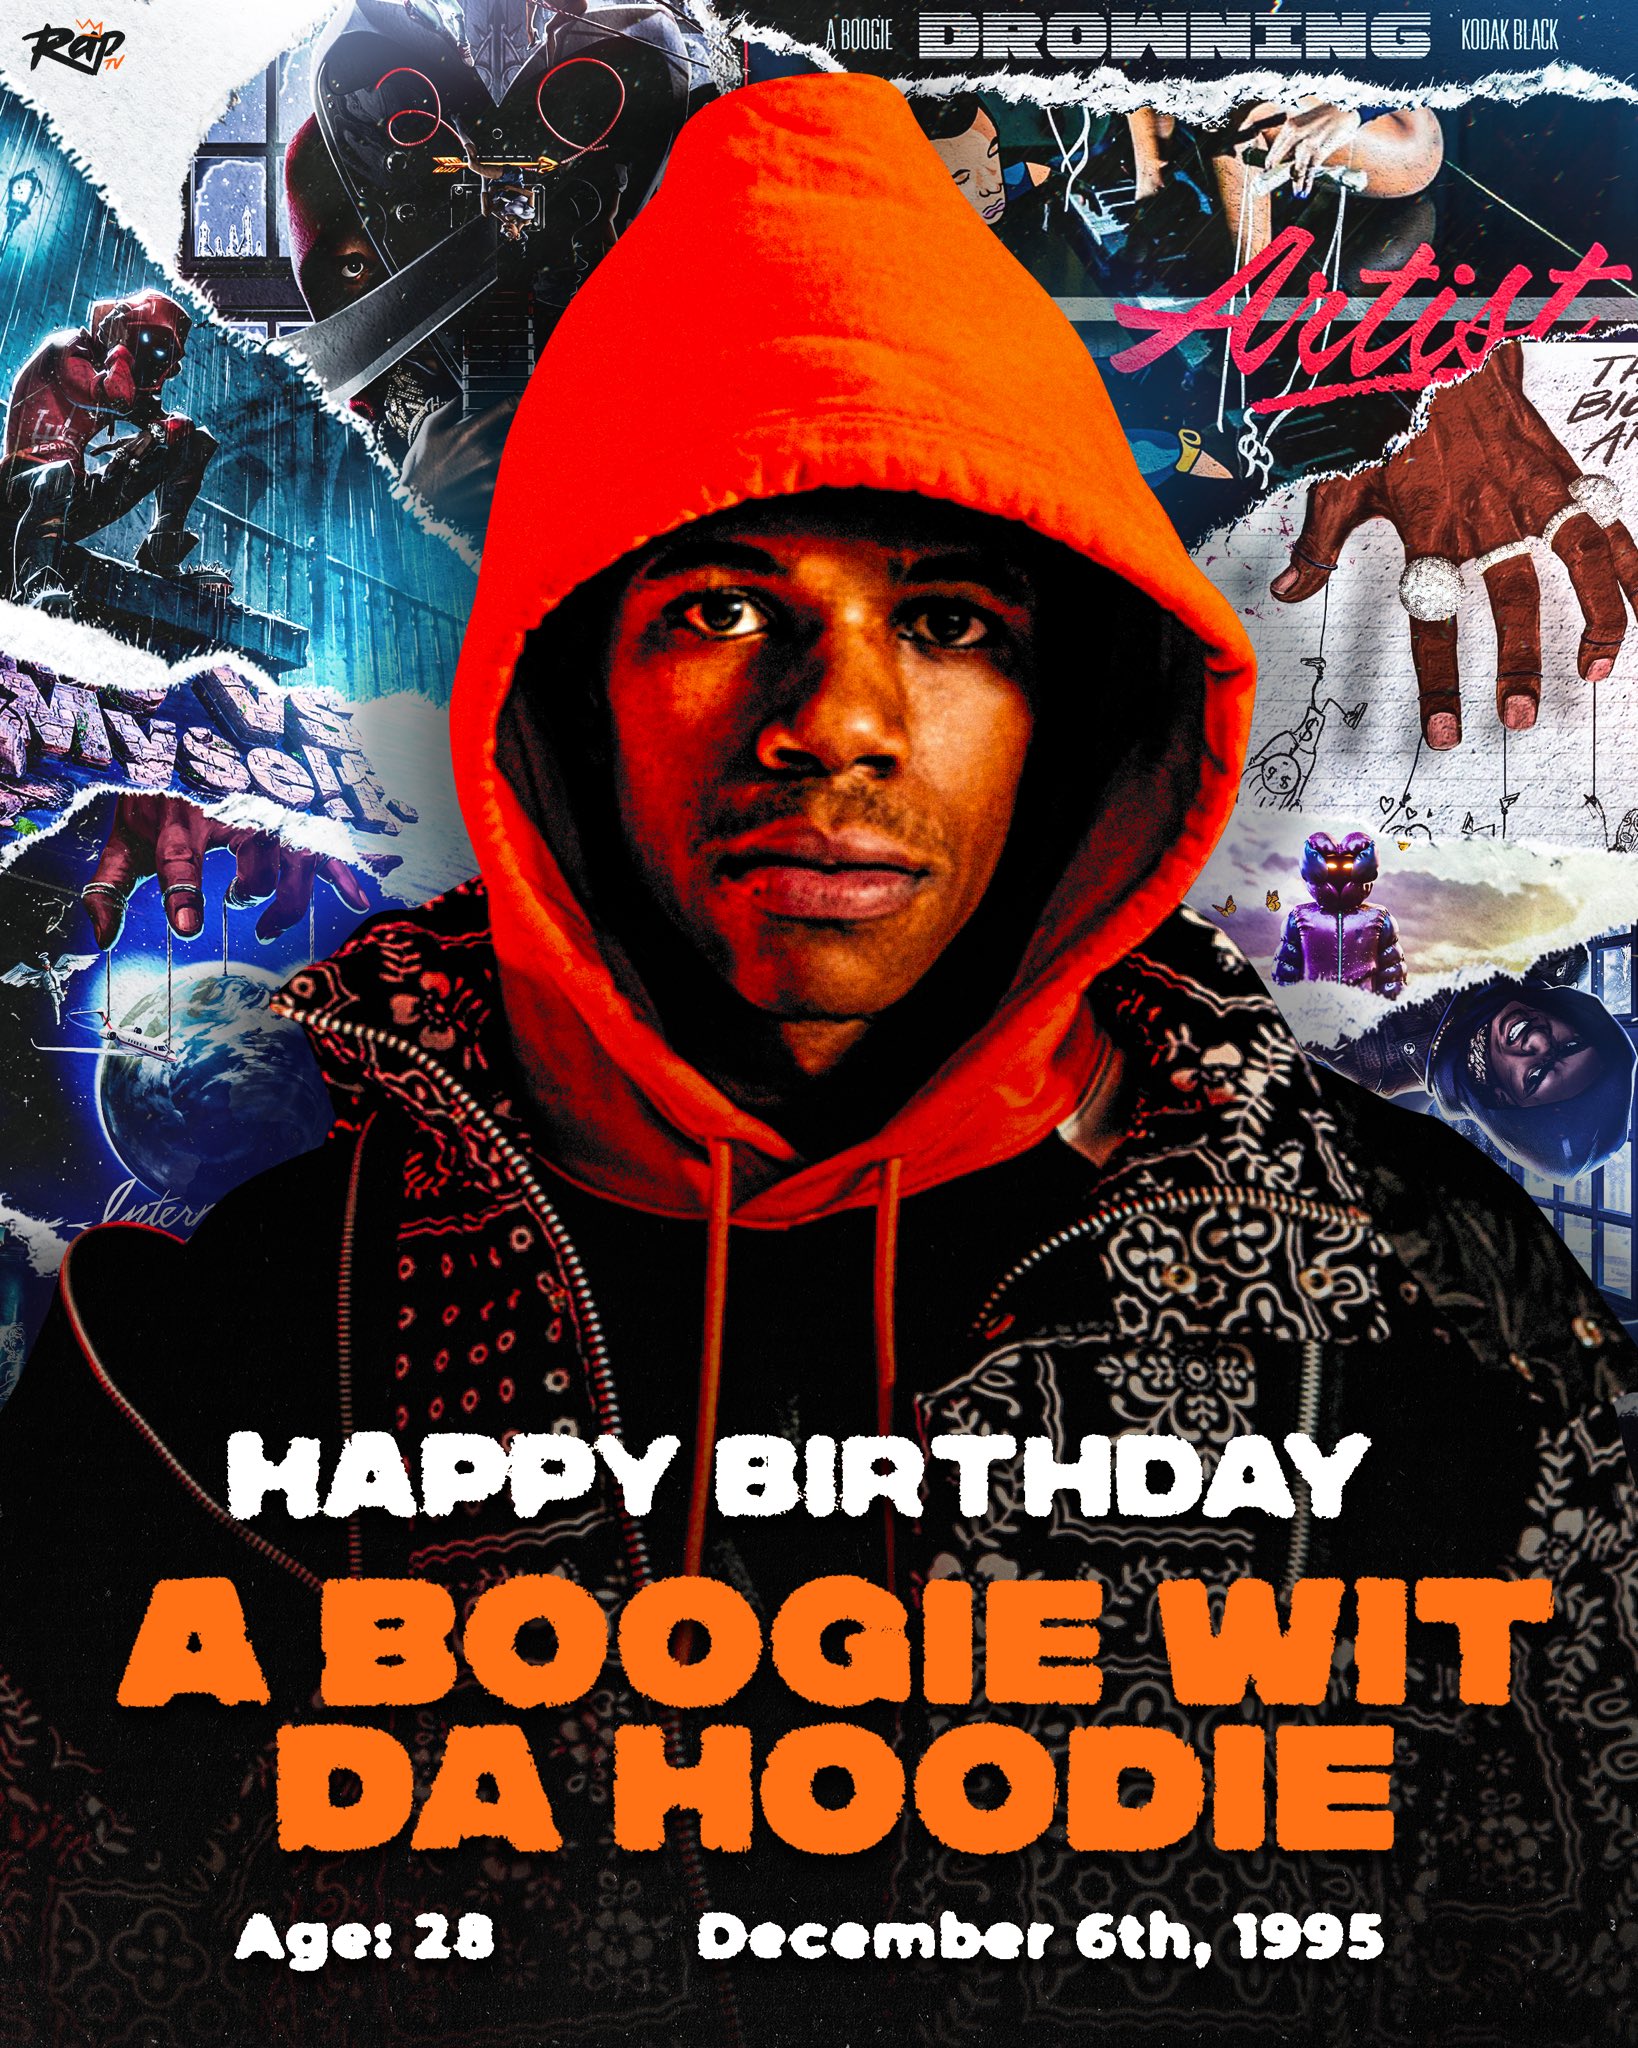 A Boogie wit da Hoodie Birthday